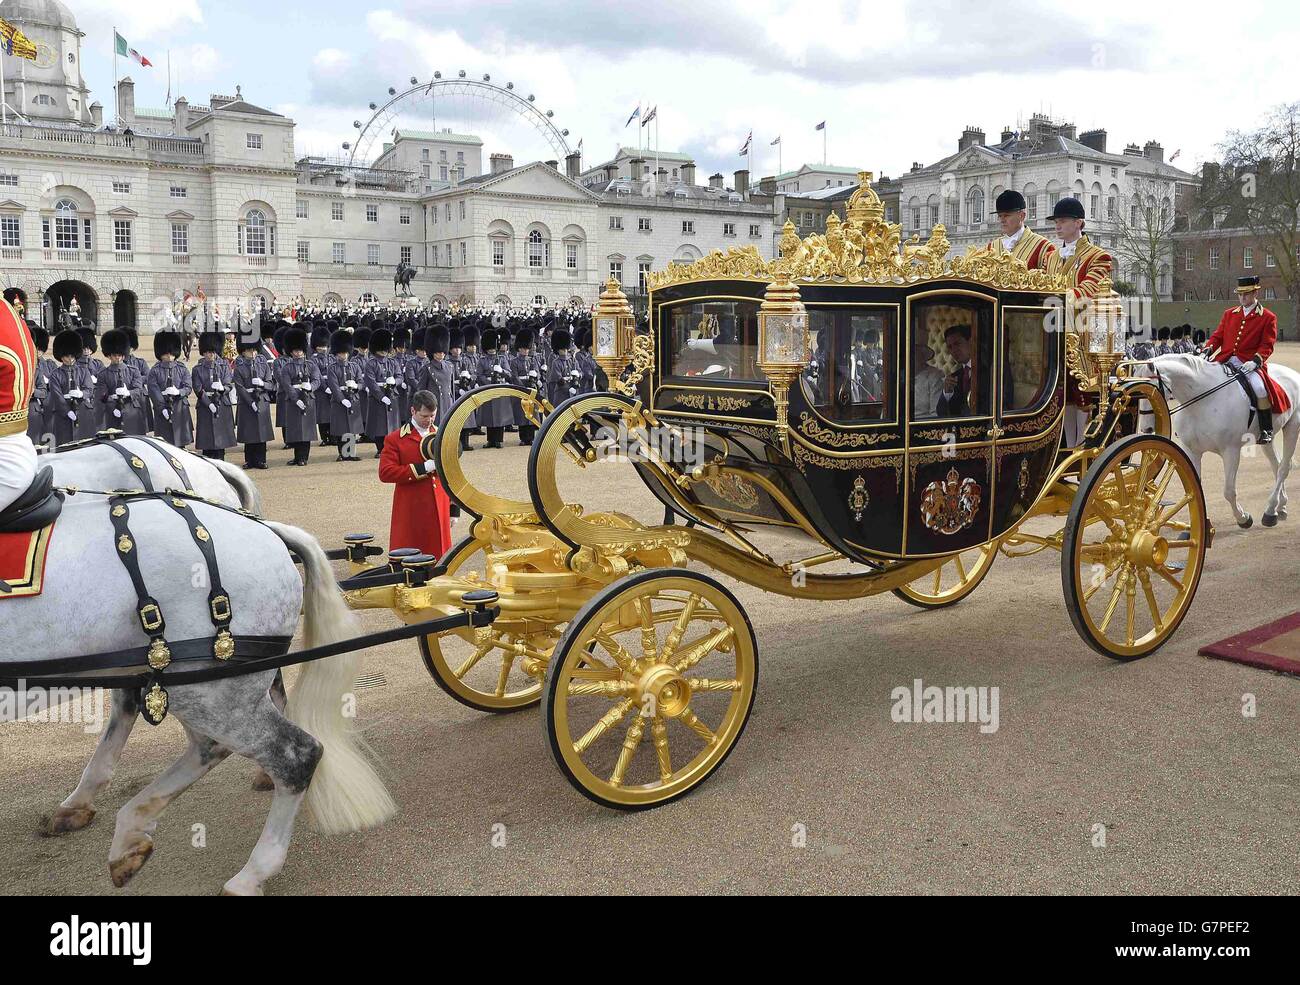 Le président du Mexique Enrique Pena Nieto et la reine Elizabeth II partent en voiture d'État après un accueil cérémonial au Horse Guards Parade, le premier d'une visite de trois jours en Grande-Bretagne. Banque D'Images